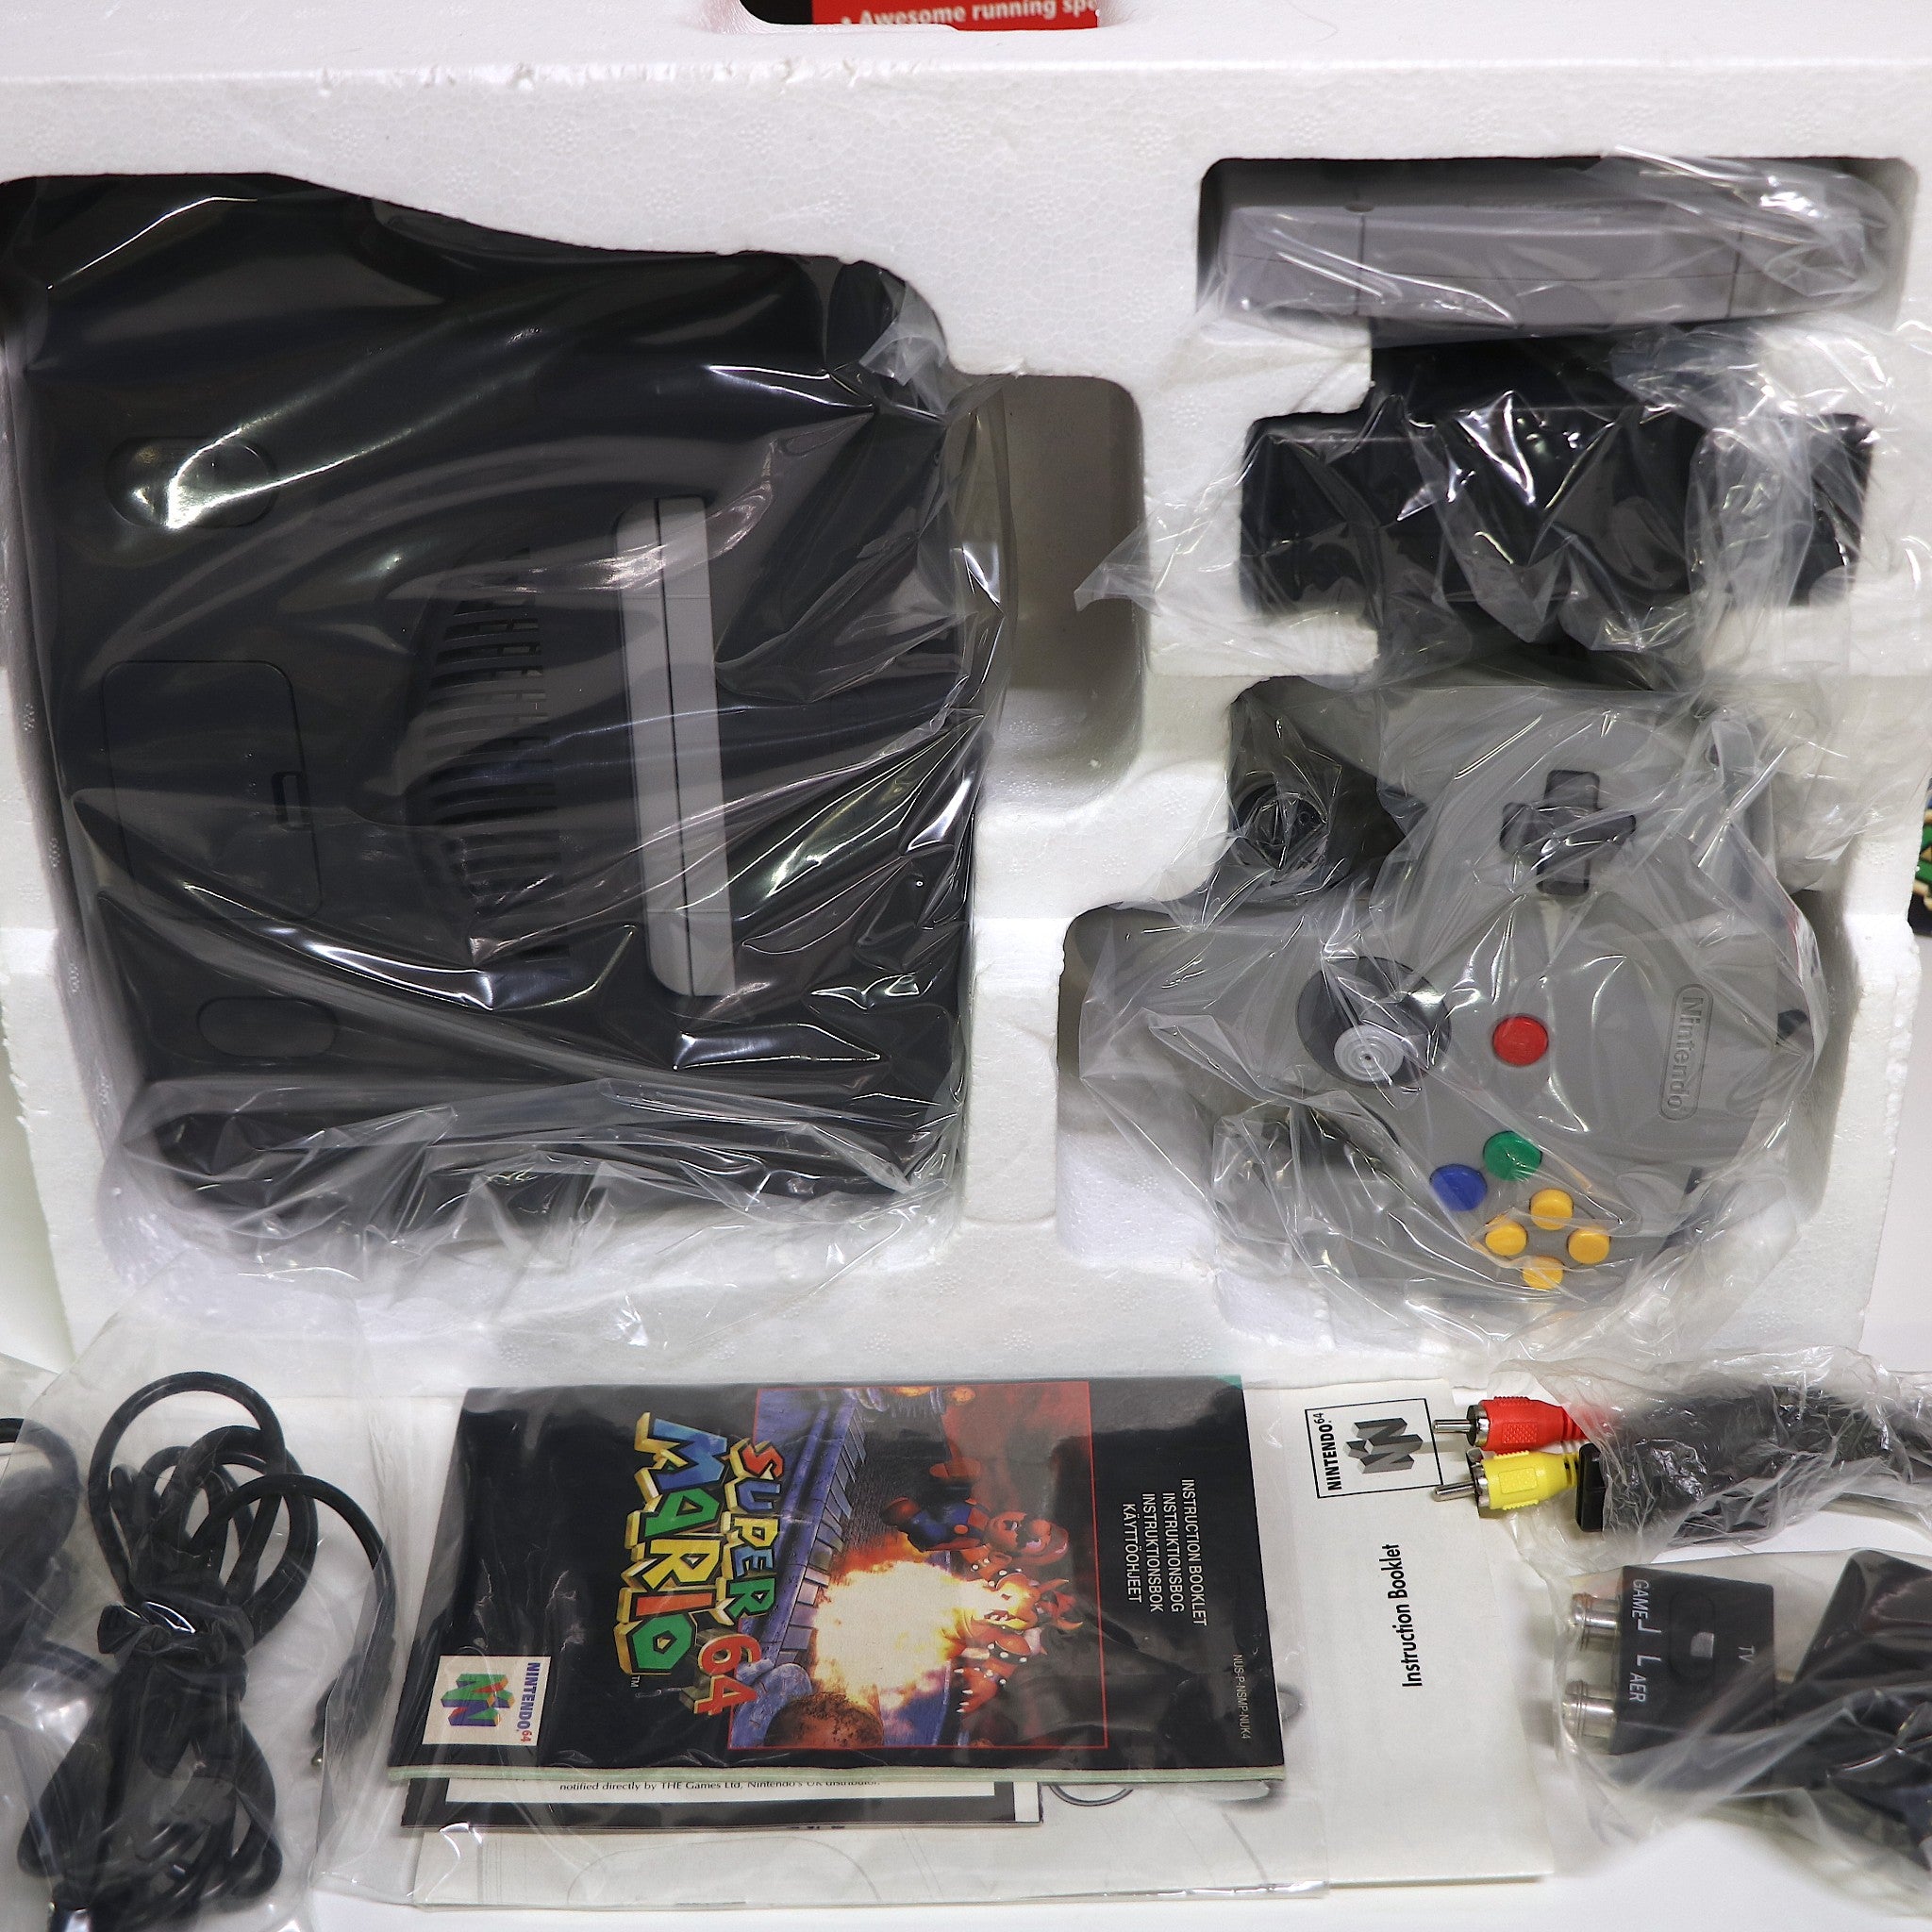 Nintendo 64 N64 Console Control Deck | Super Mario Edition | Boxed | VGC